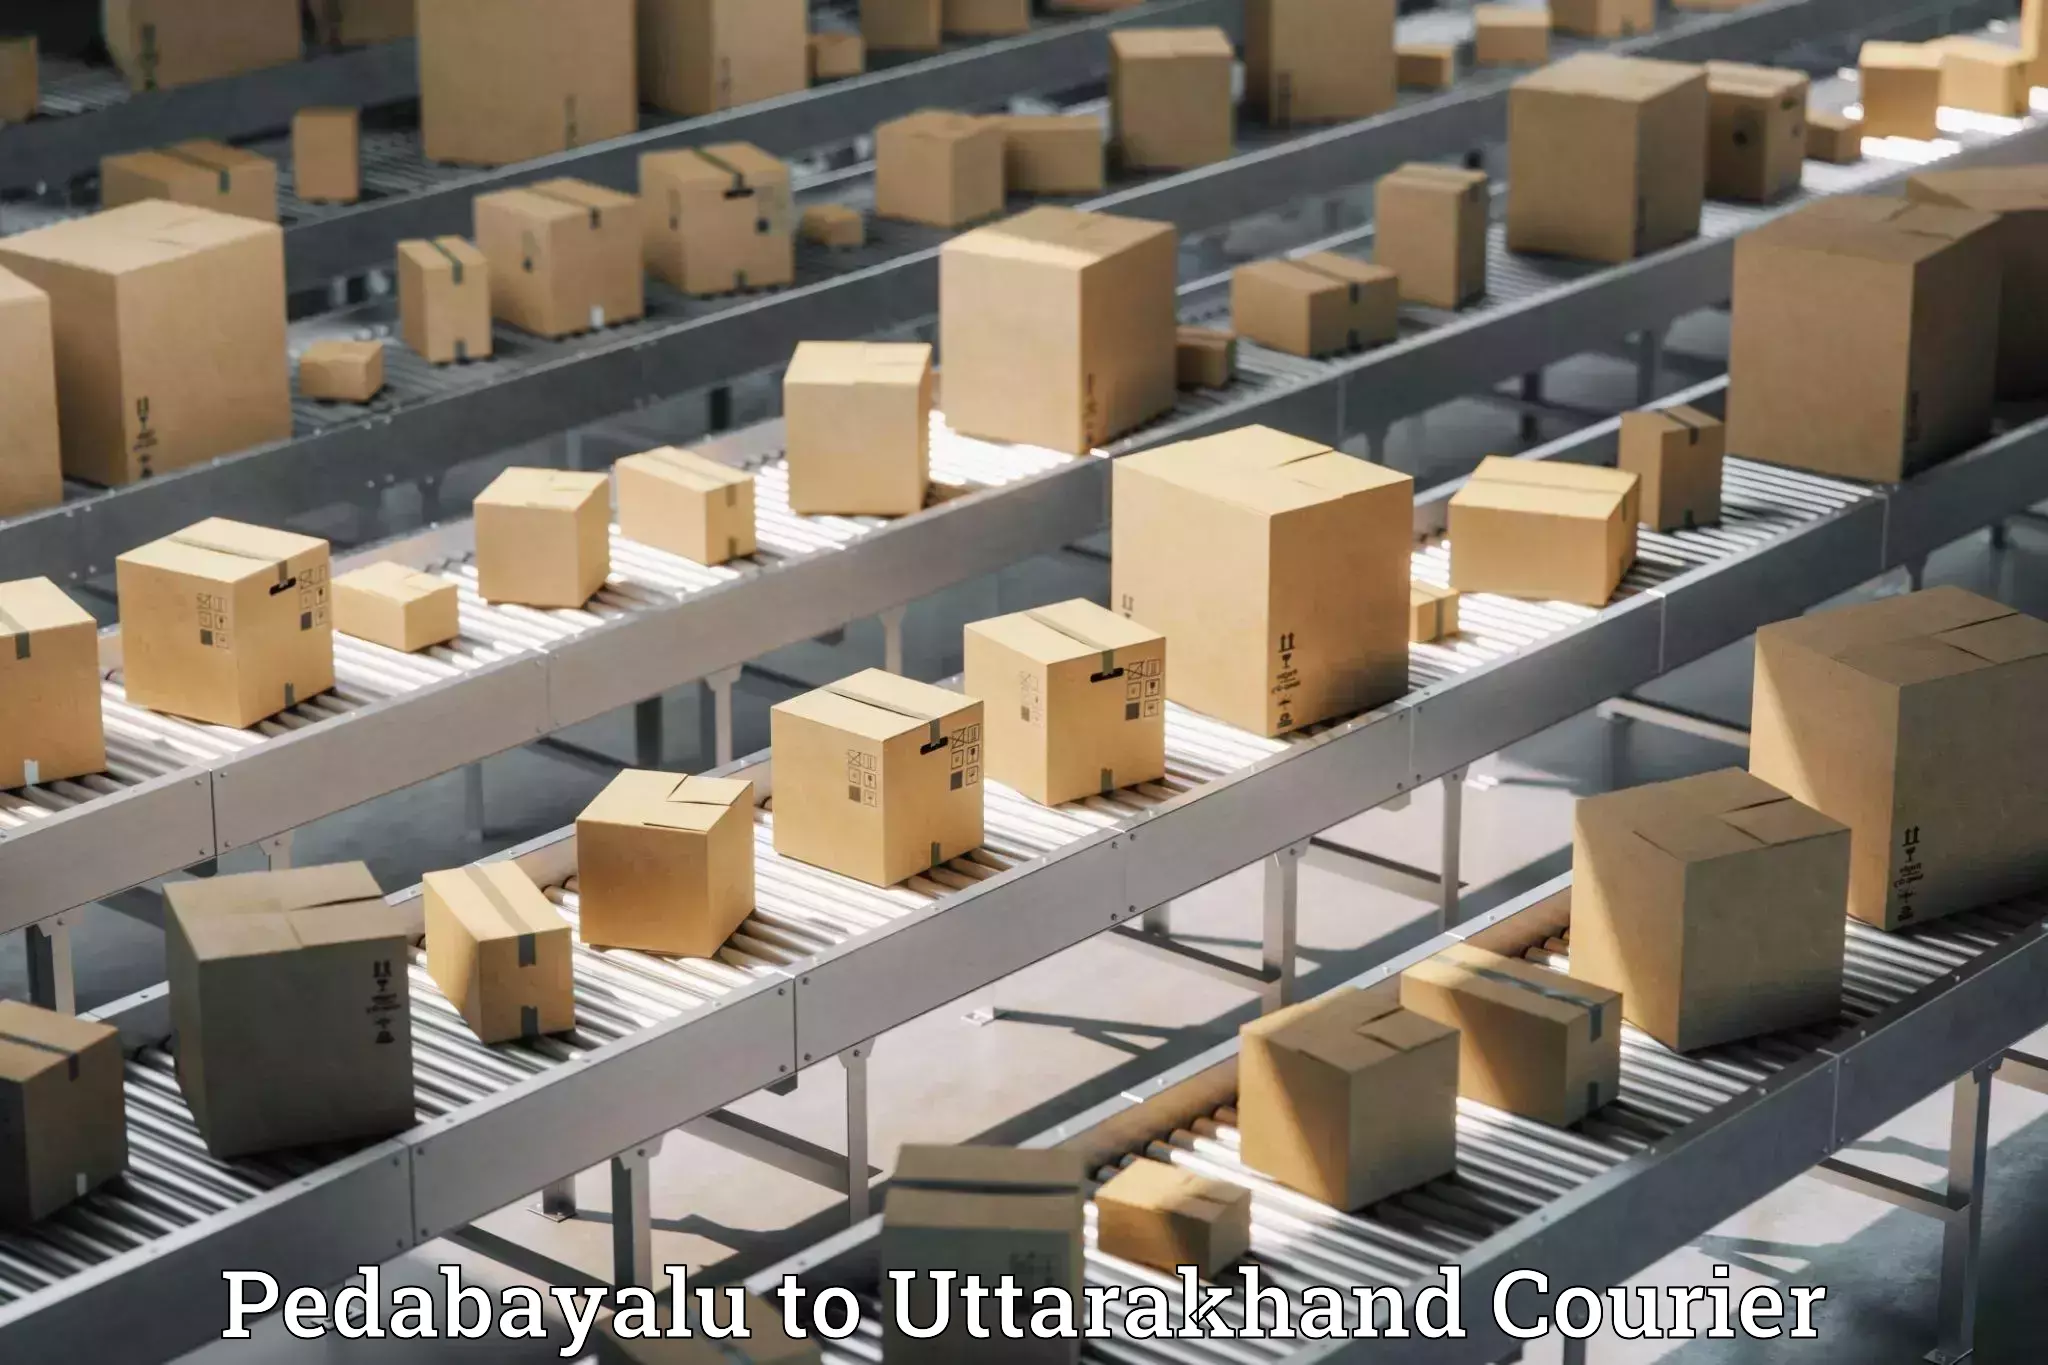 Automated parcel services Pedabayalu to Gopeshwar